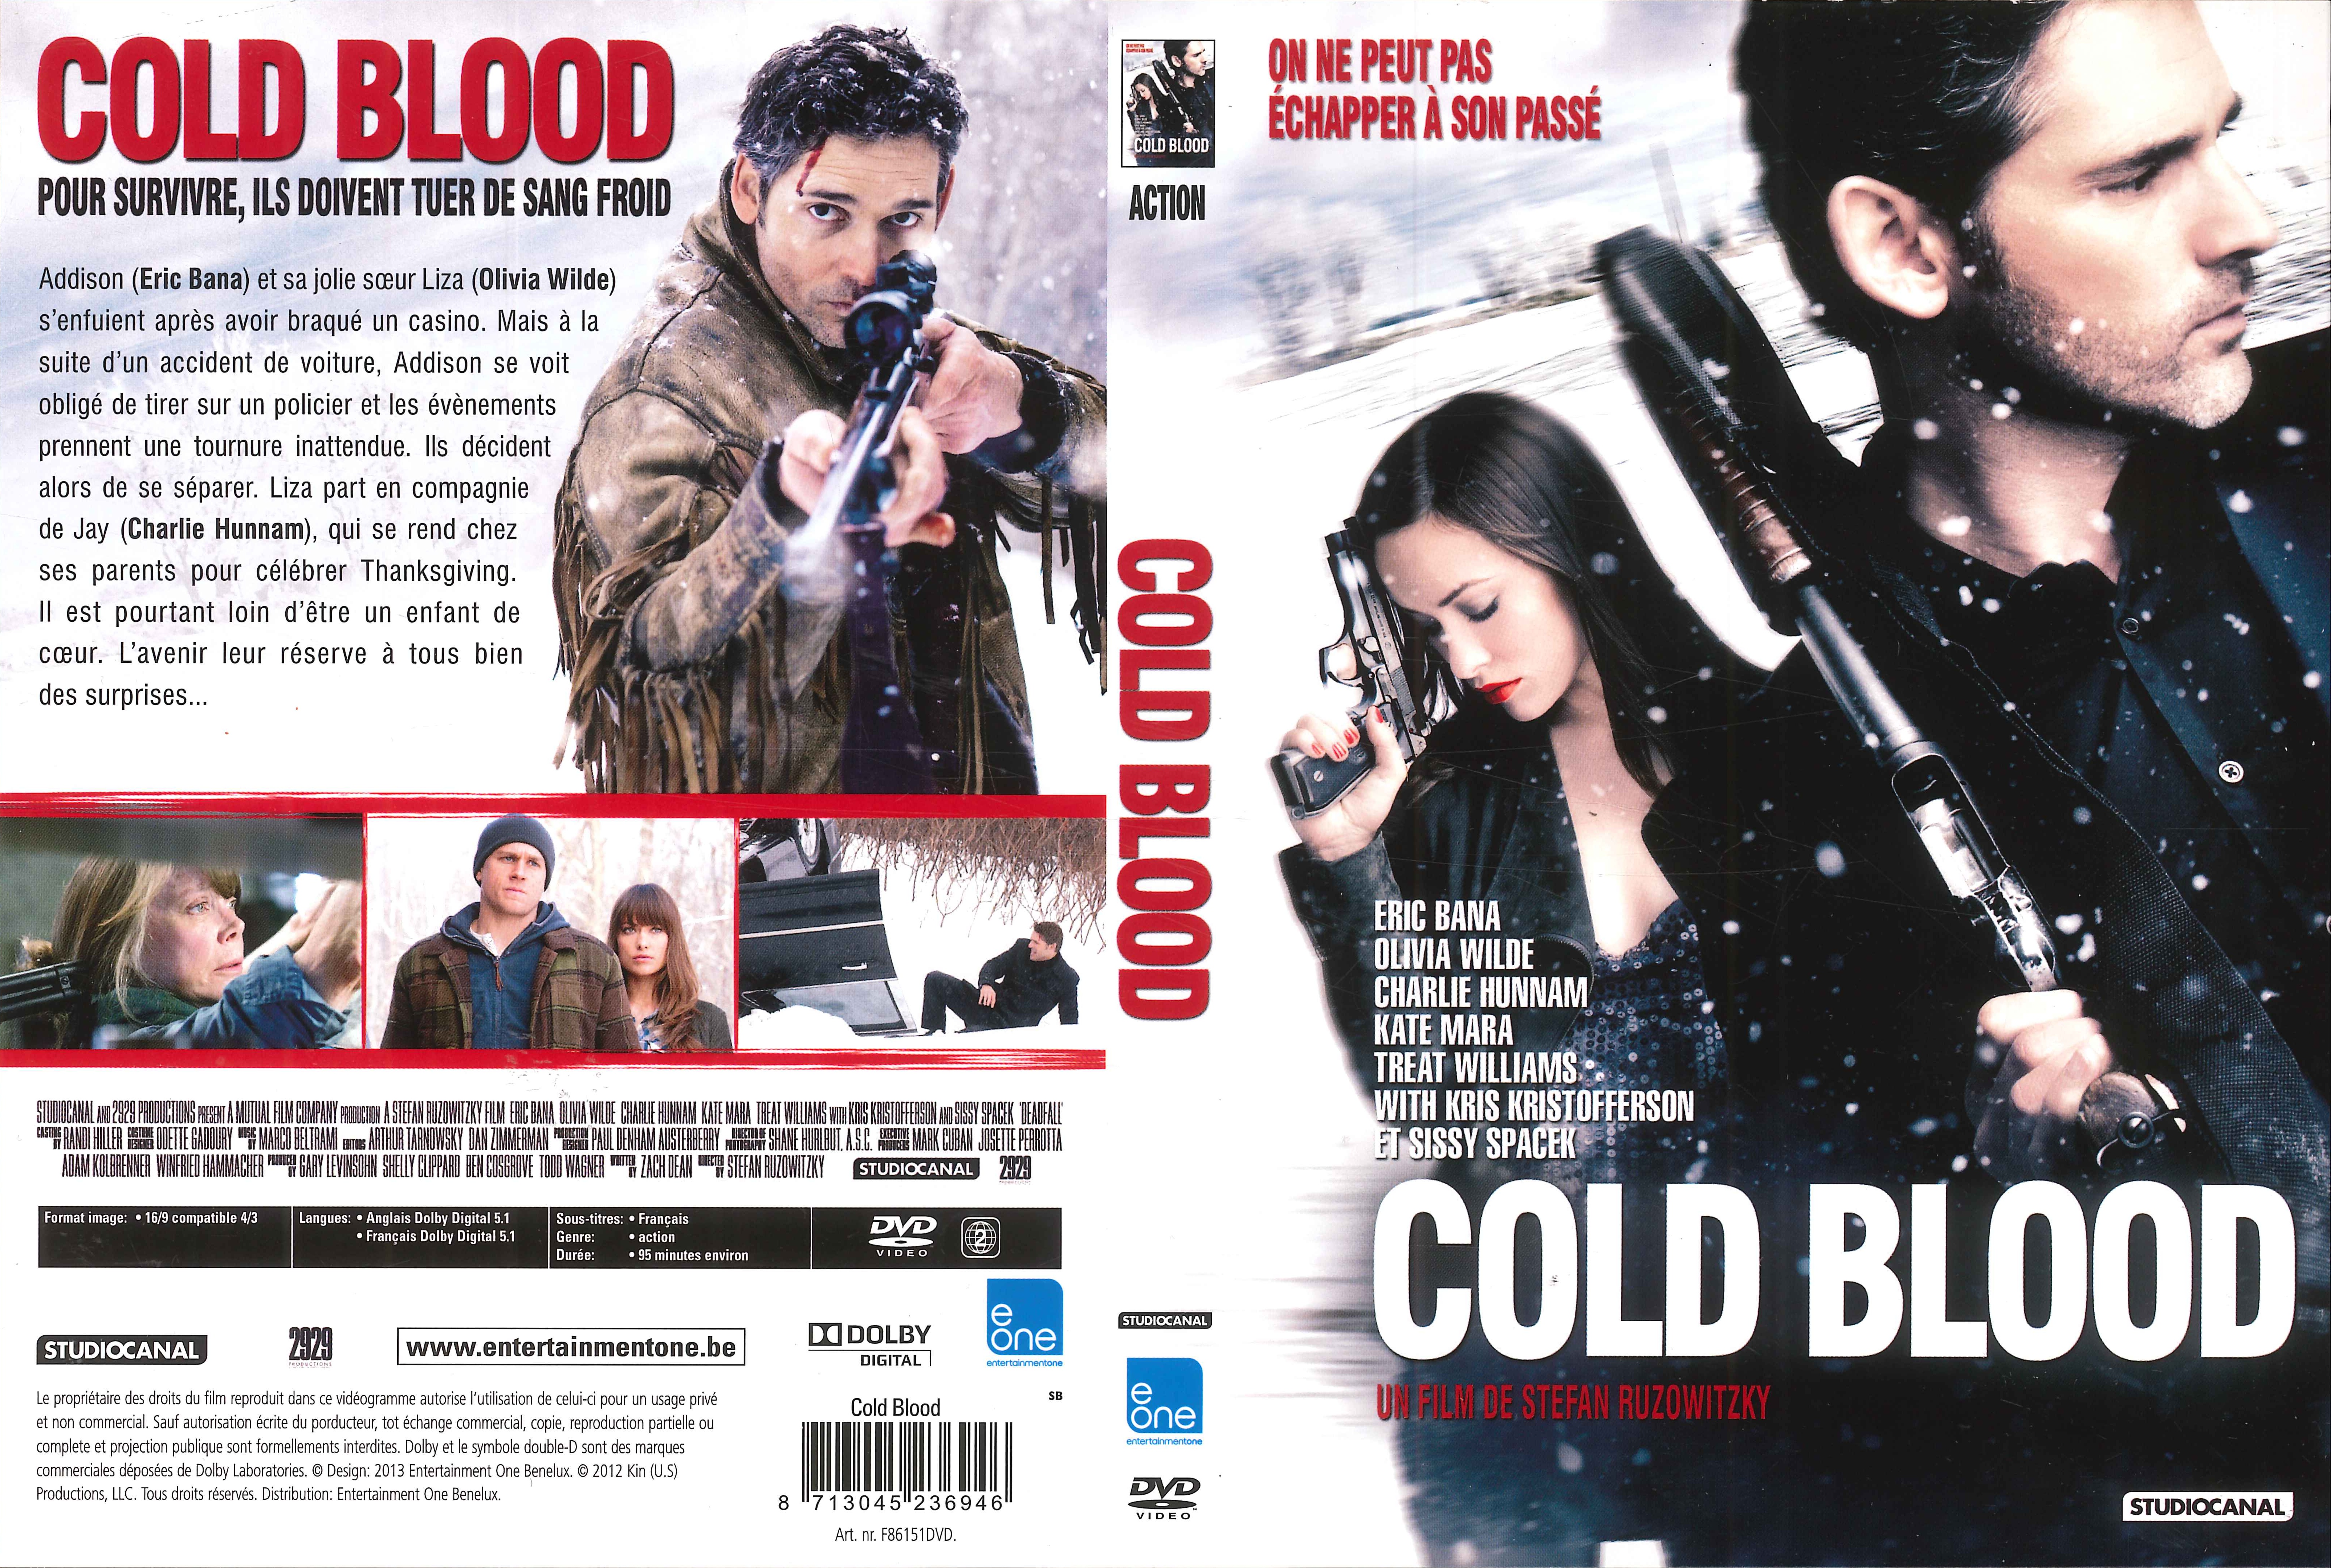 Jaquette DVD Cold Blood v2